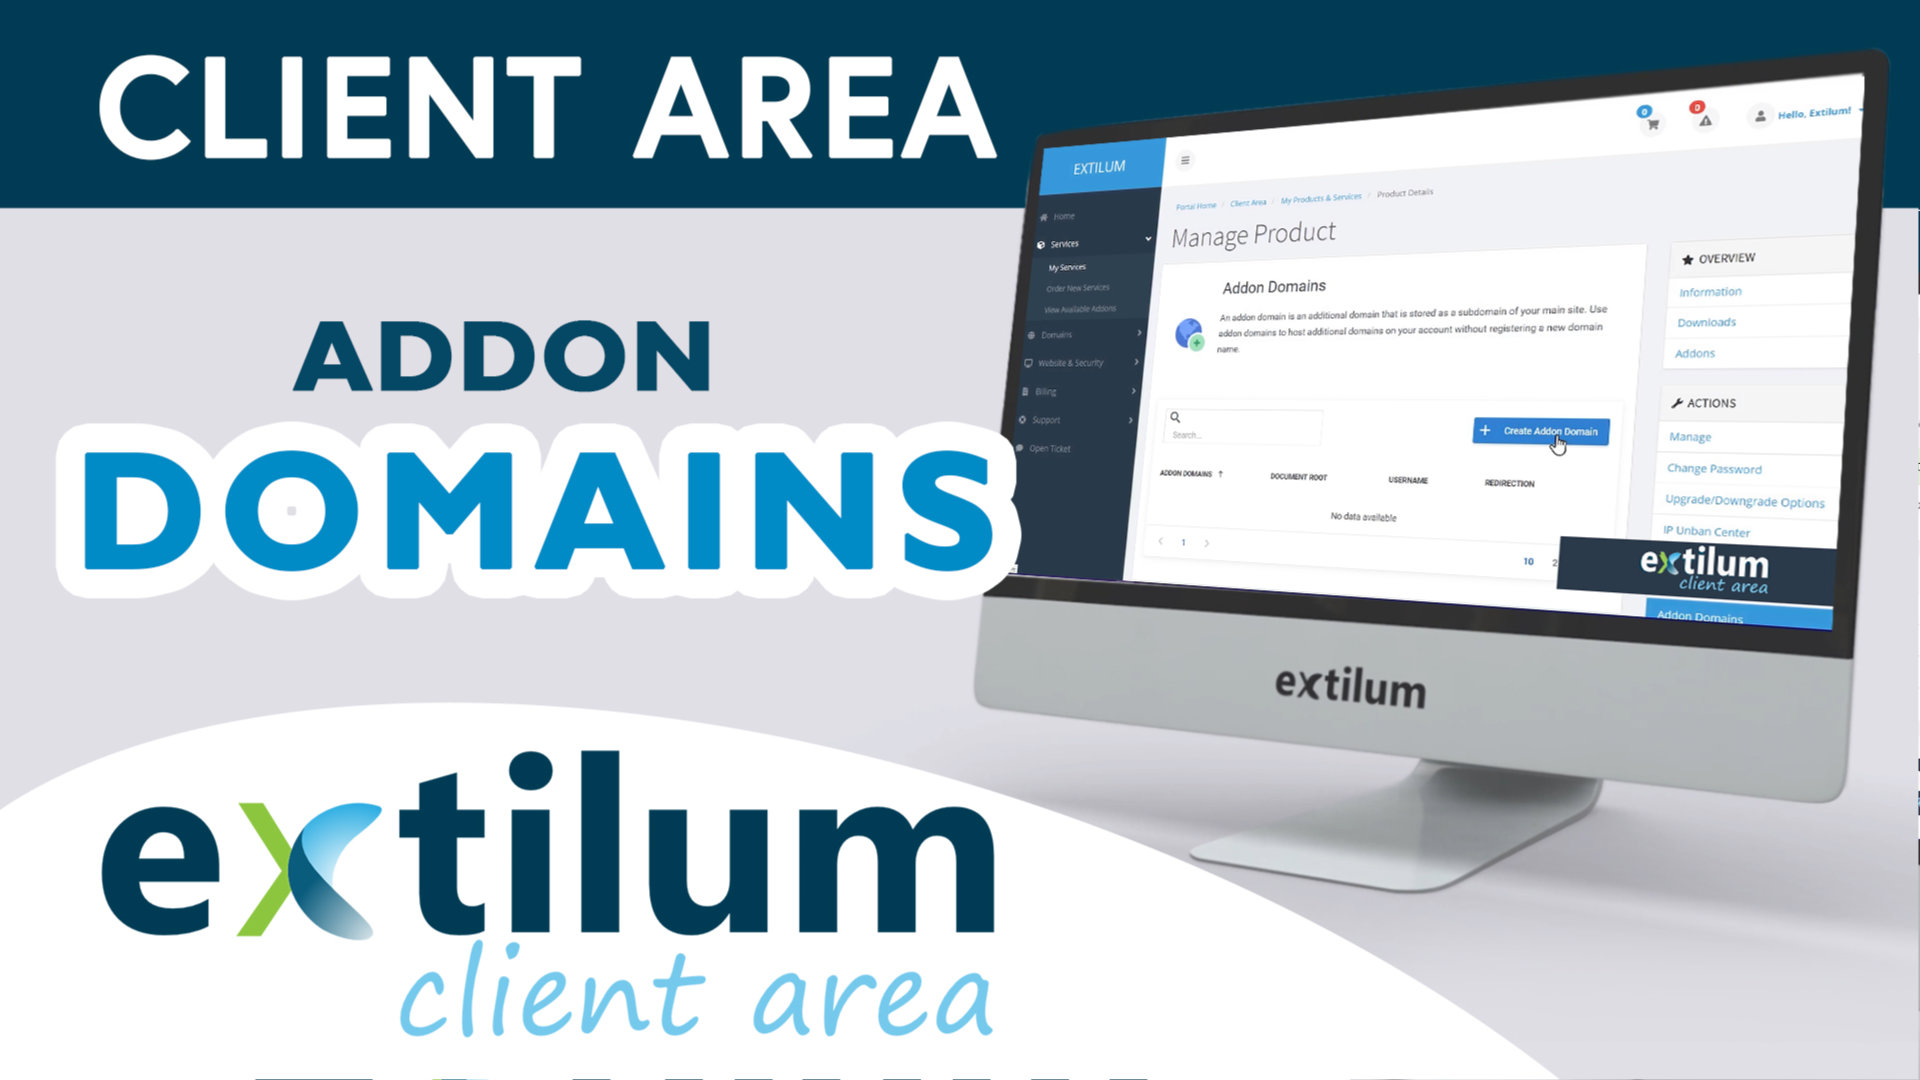 Extilum Client Area - Addon Domains